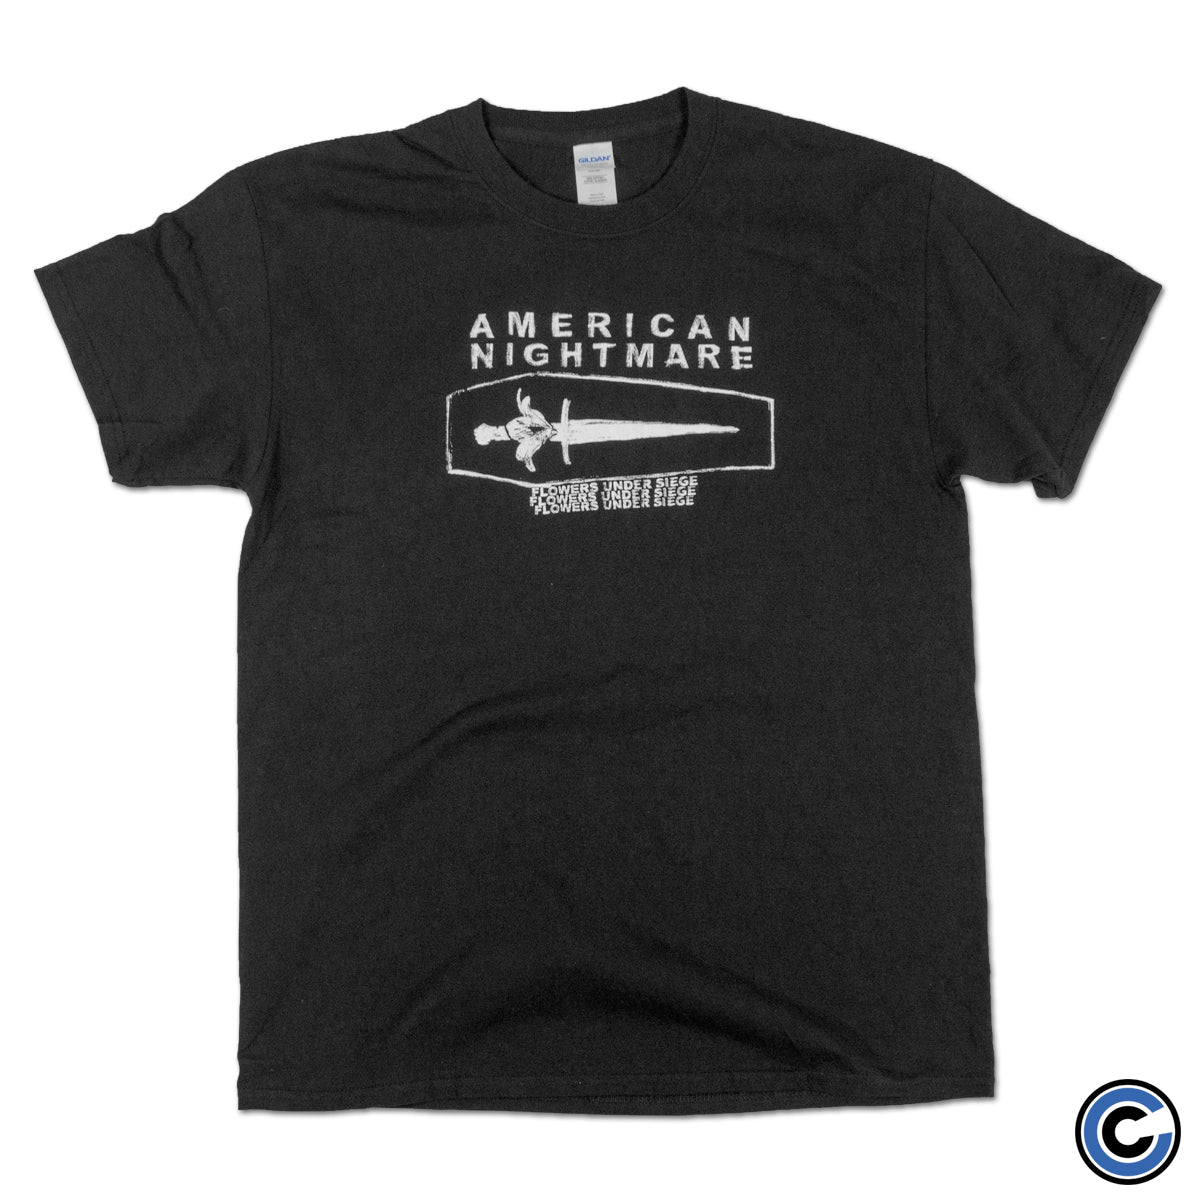 American Nightmare "Under Siege" Shirt